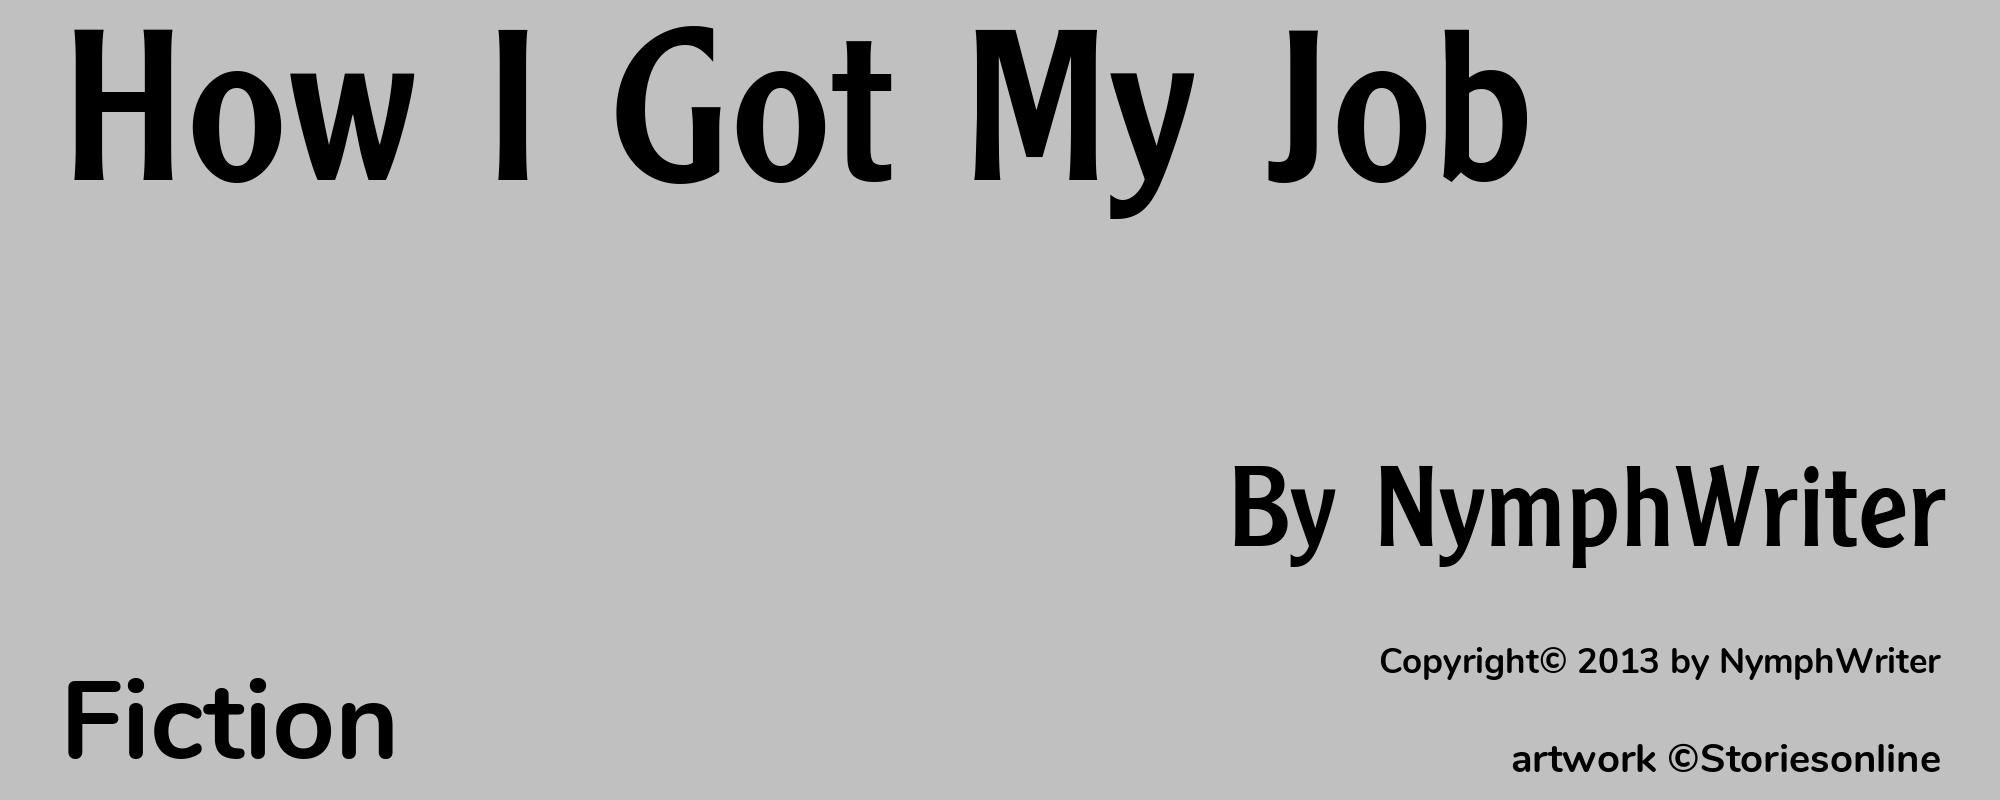 How I Got My Job - Cover